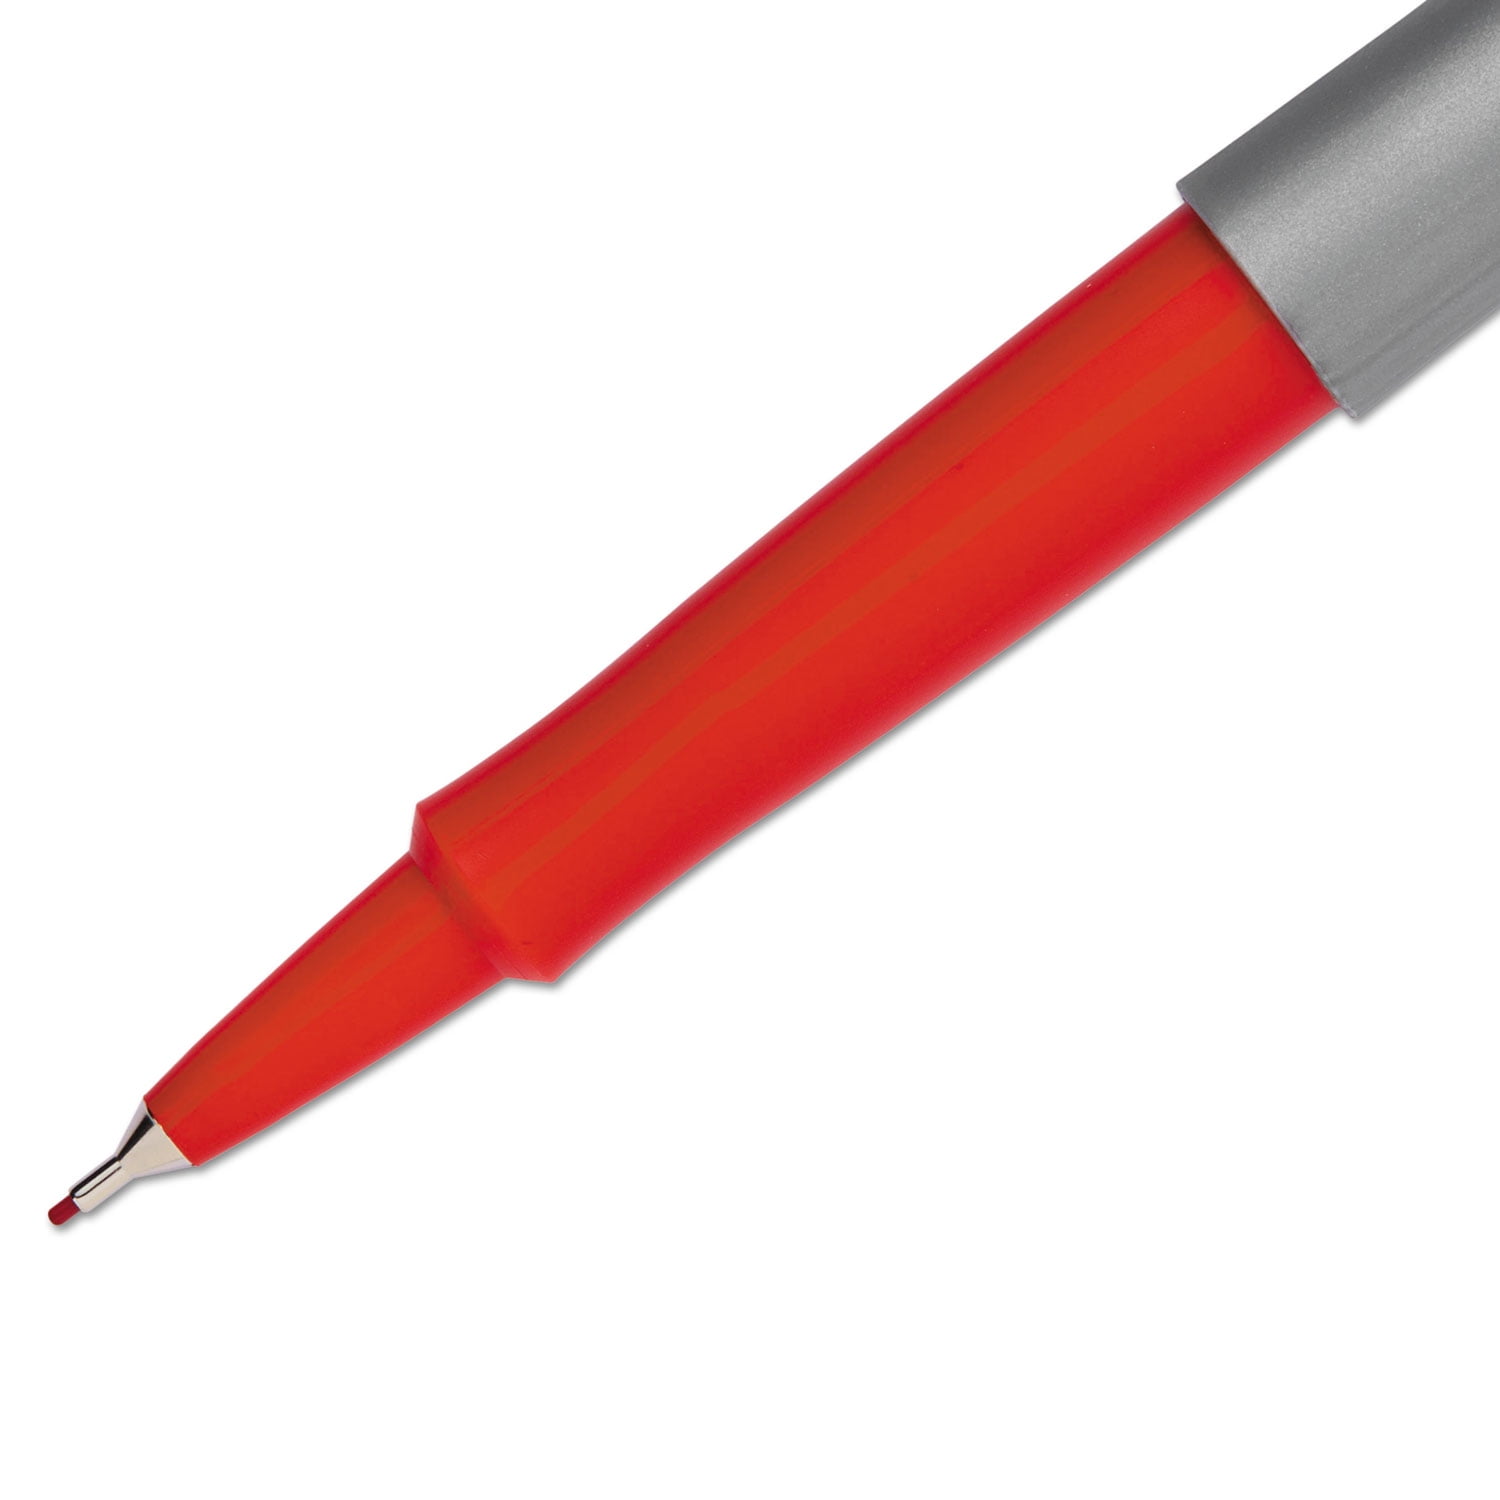 Paper Mate Flair Felt Pen Bold Point Assorted Ink Dozen (2125414) : Target